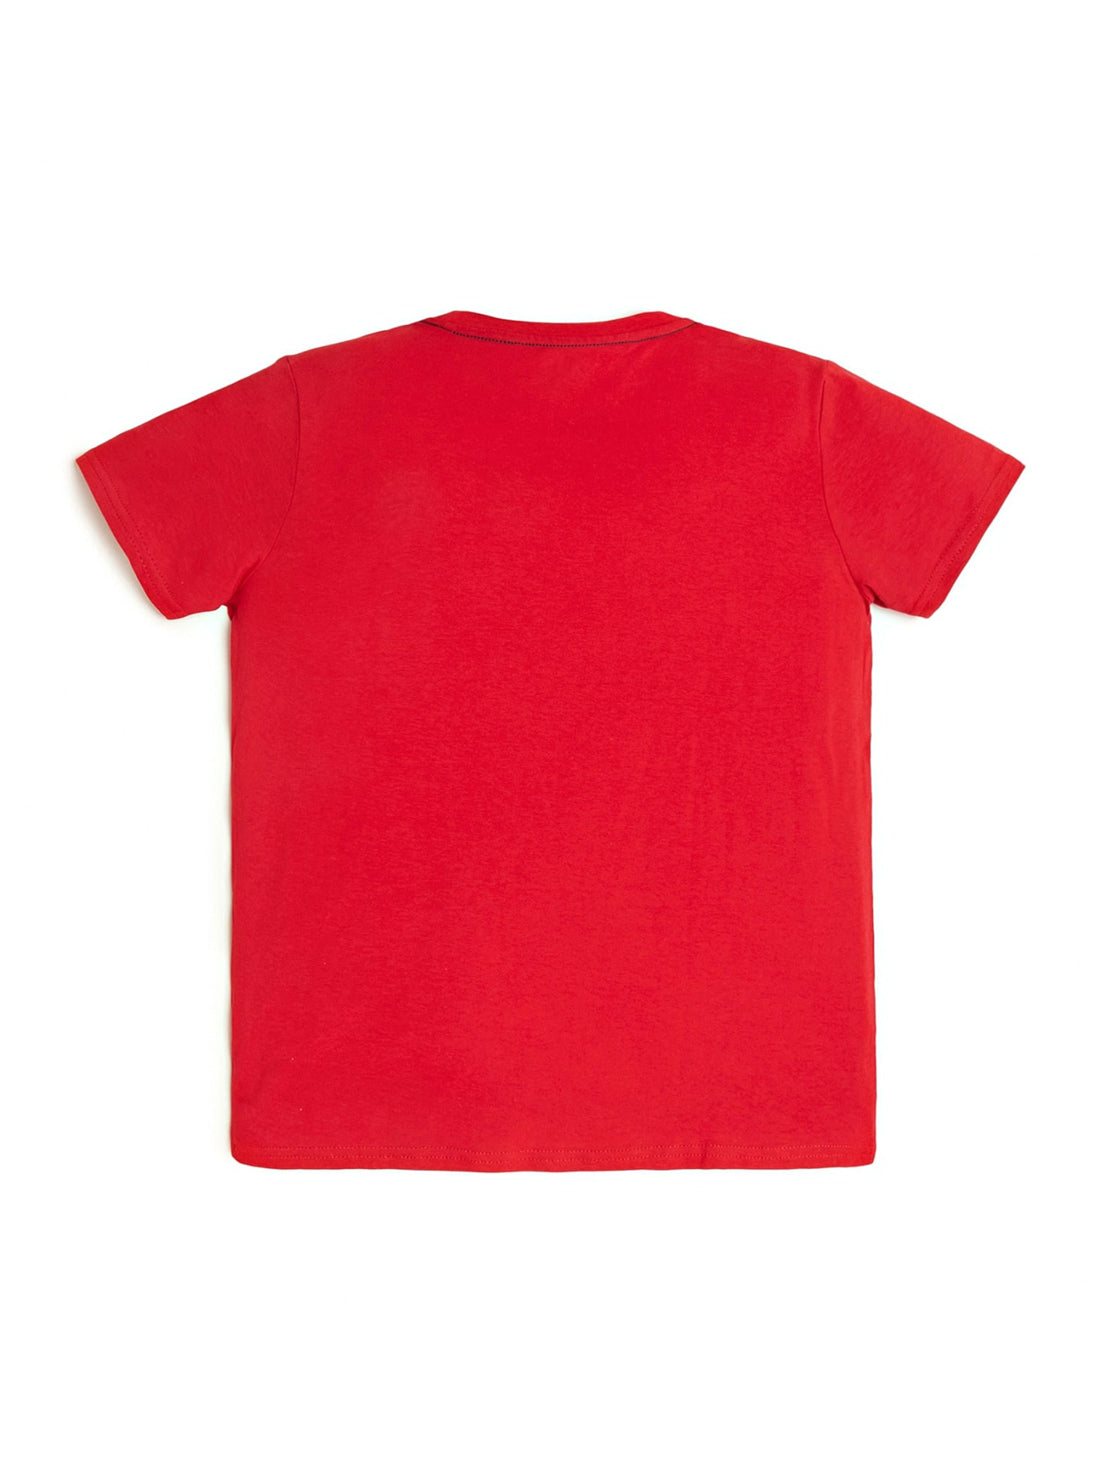 GUESS Big Boys Red Logo T-Shirt (7-16) L73I55K8HM0 Back View